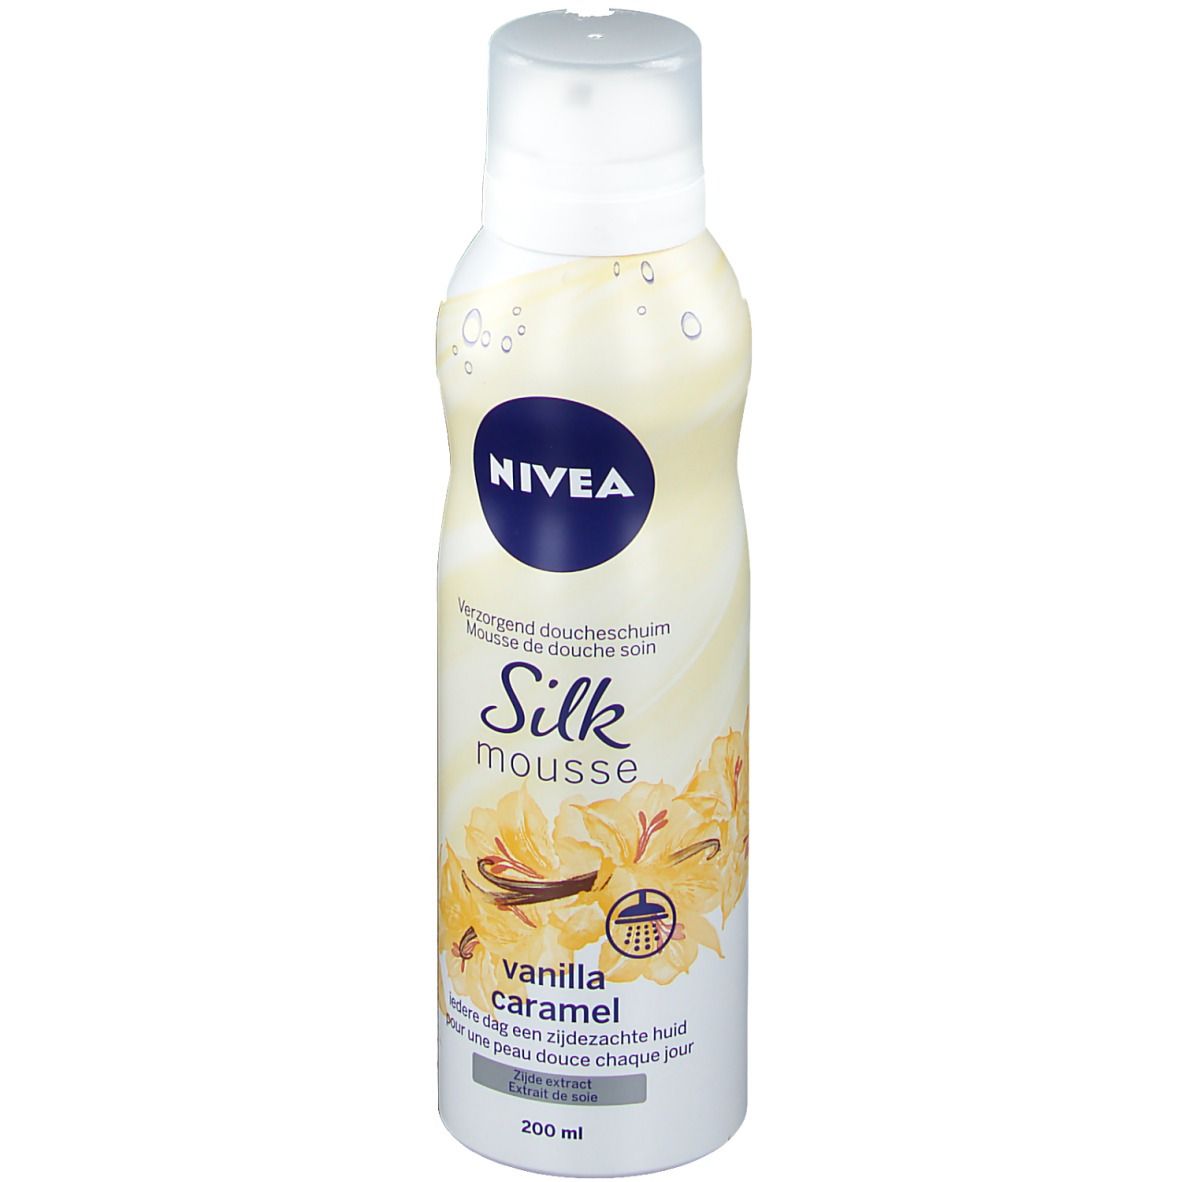 NIVEA Mousse de Douche Soin Silk Mousse Vanilla Caramel 200 ml